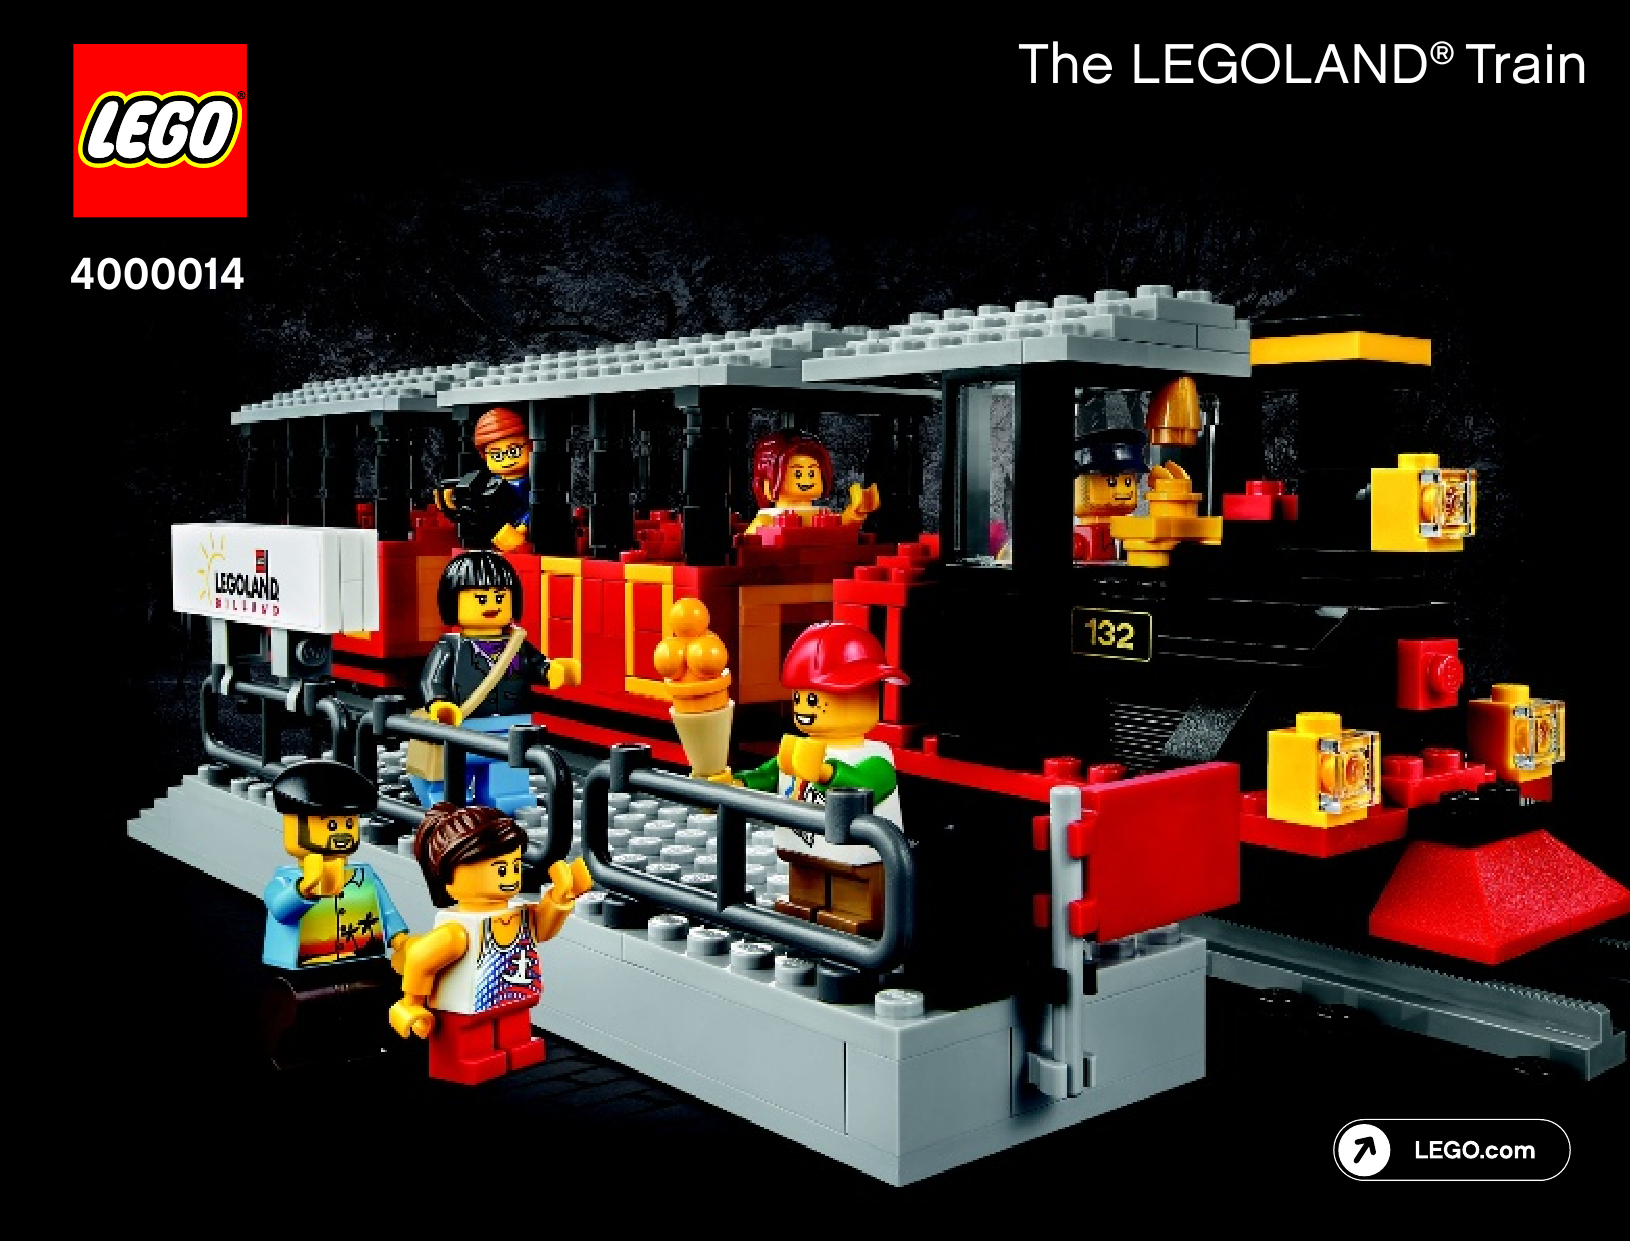 LEGO Inside Tour 2014